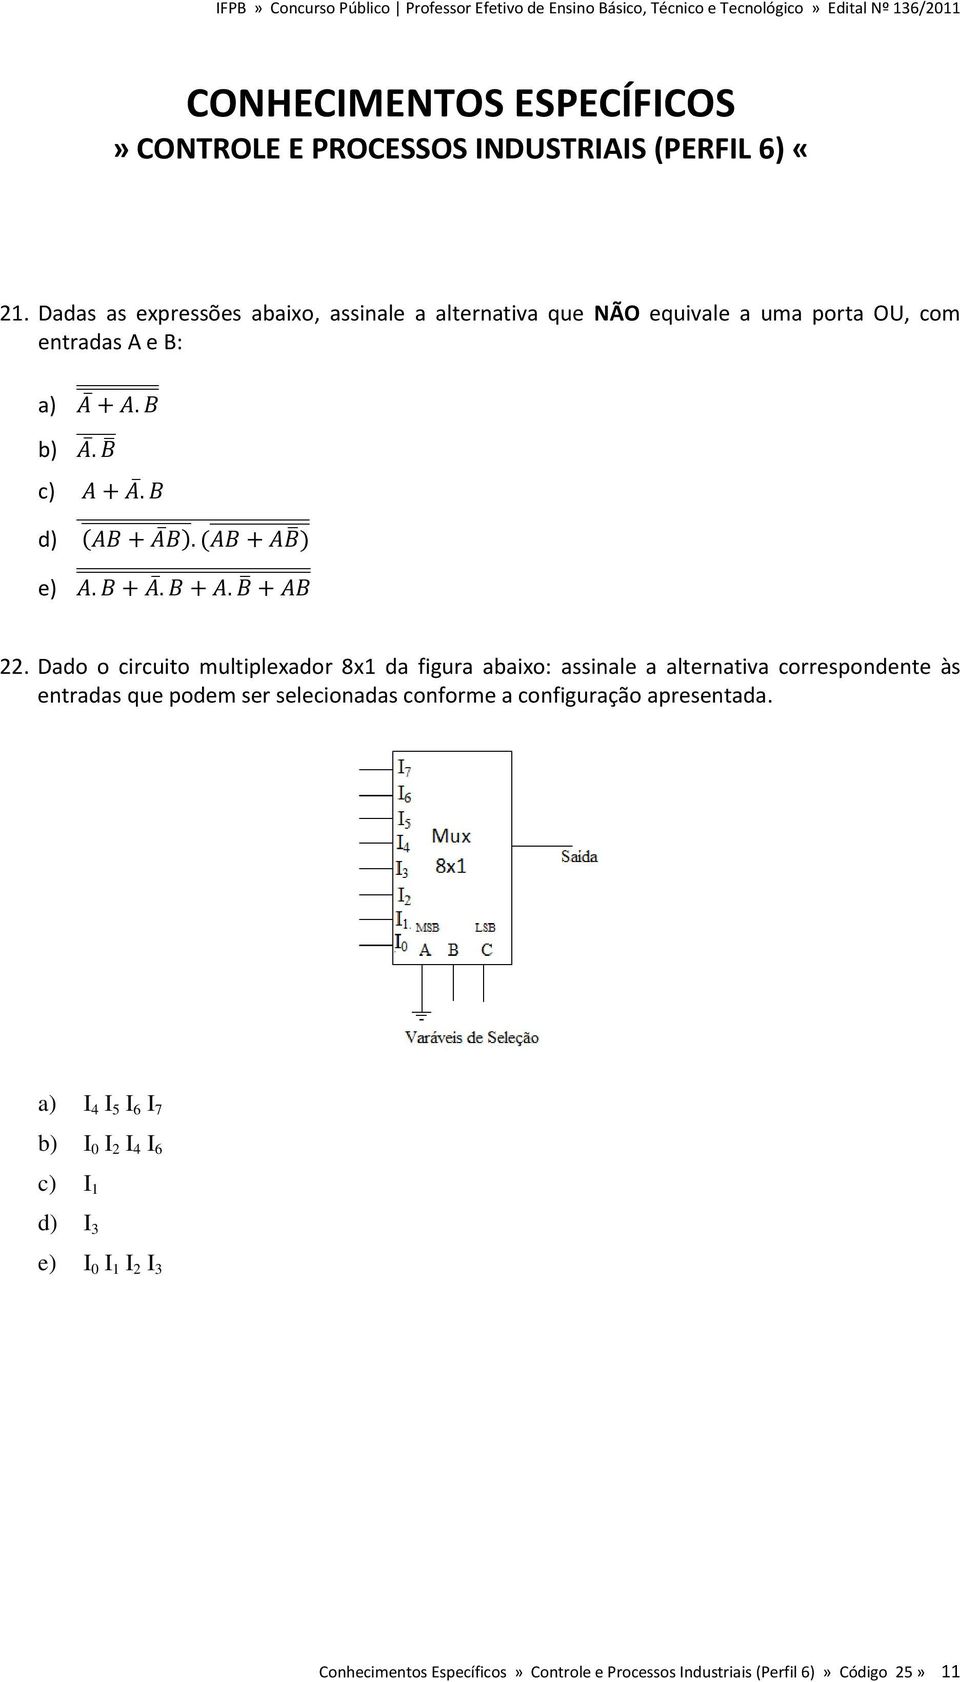 Dado o circuito multiplexador 8x1 da figura abaixo: assinale a alternativa correspondente às entradas que podem ser selecionadas